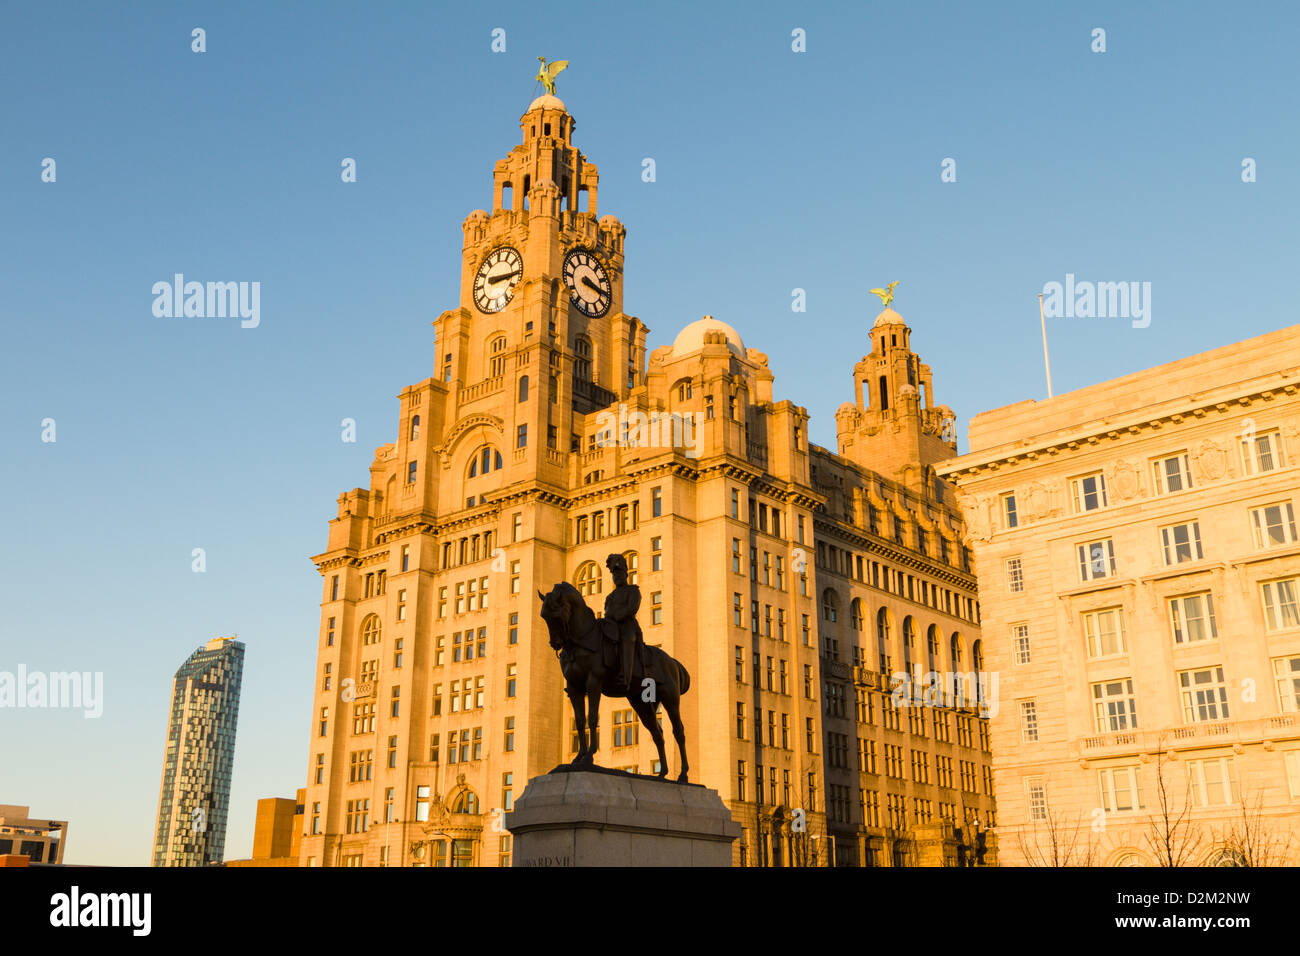 Les bâtiments du foie et statue d'Edouard VII, Liverpool, Angleterre Banque D'Images